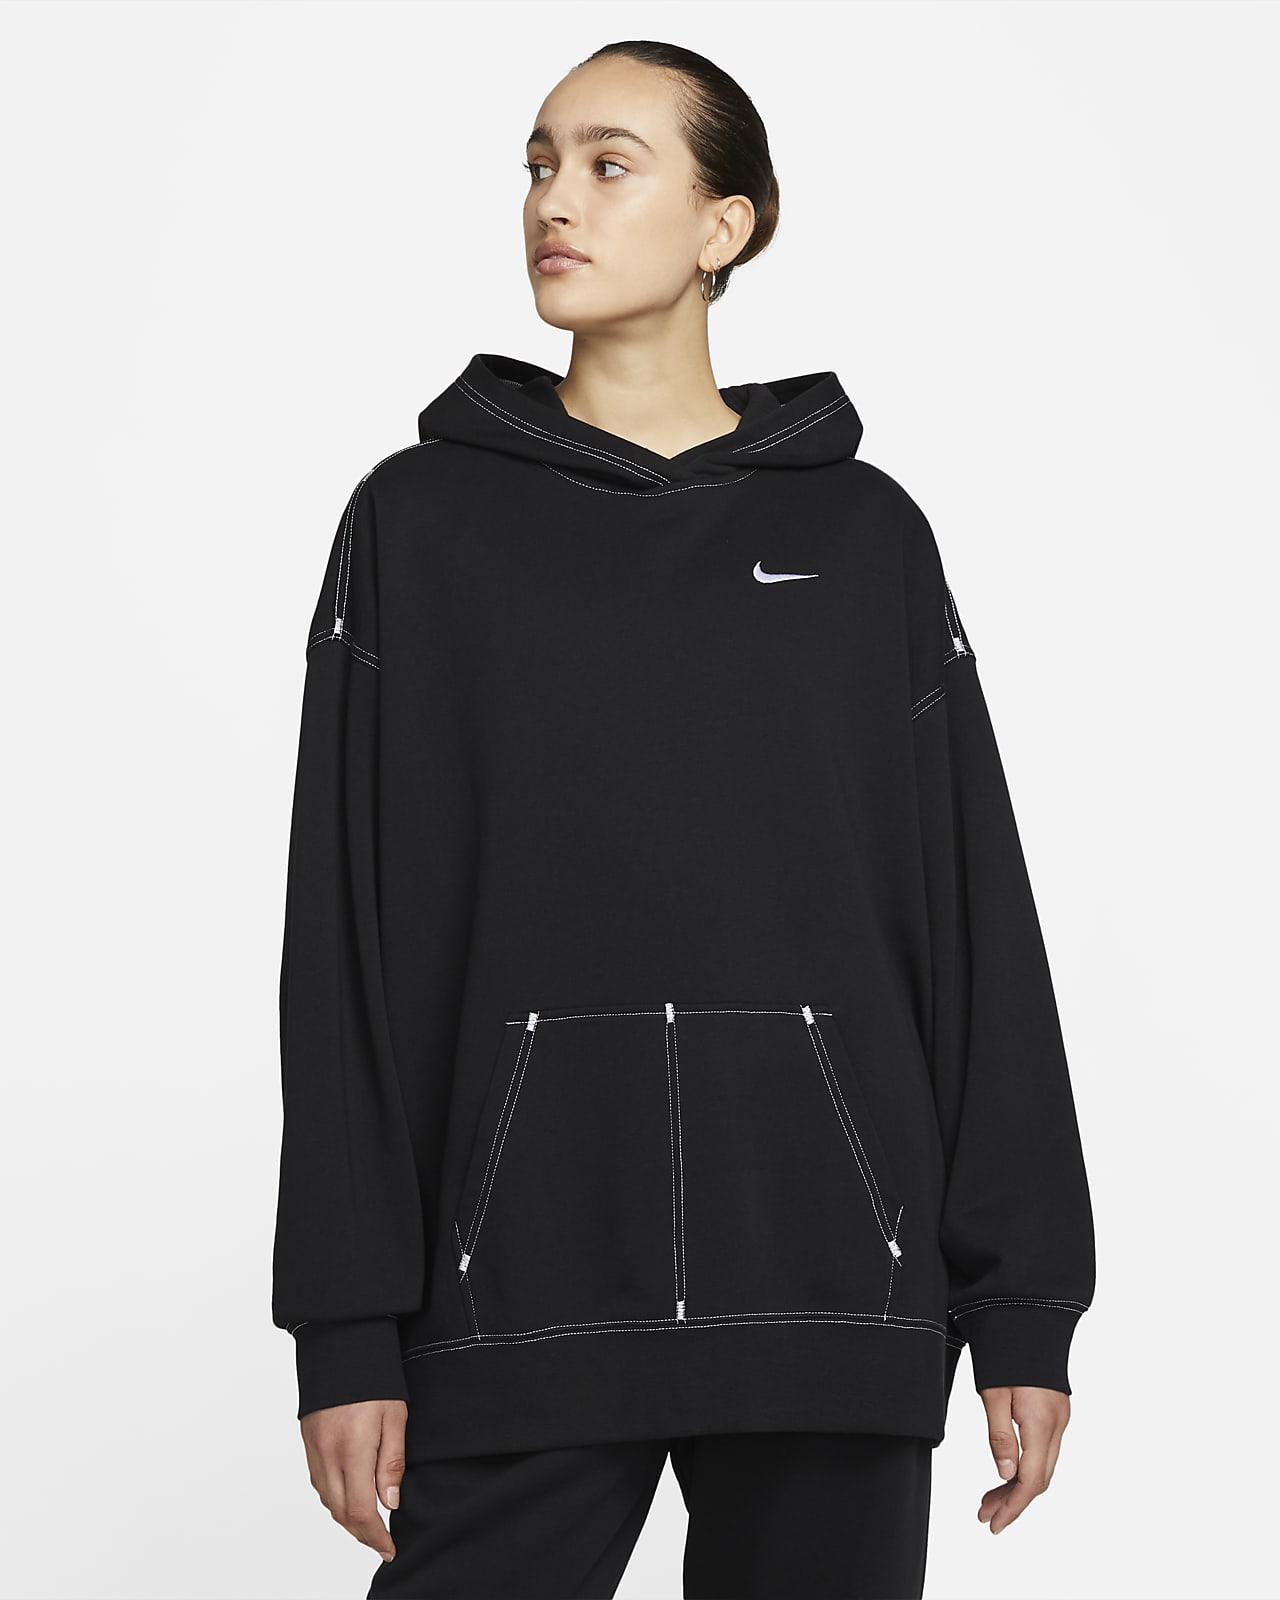 Nike Sportswear ekstra stor hettegenser